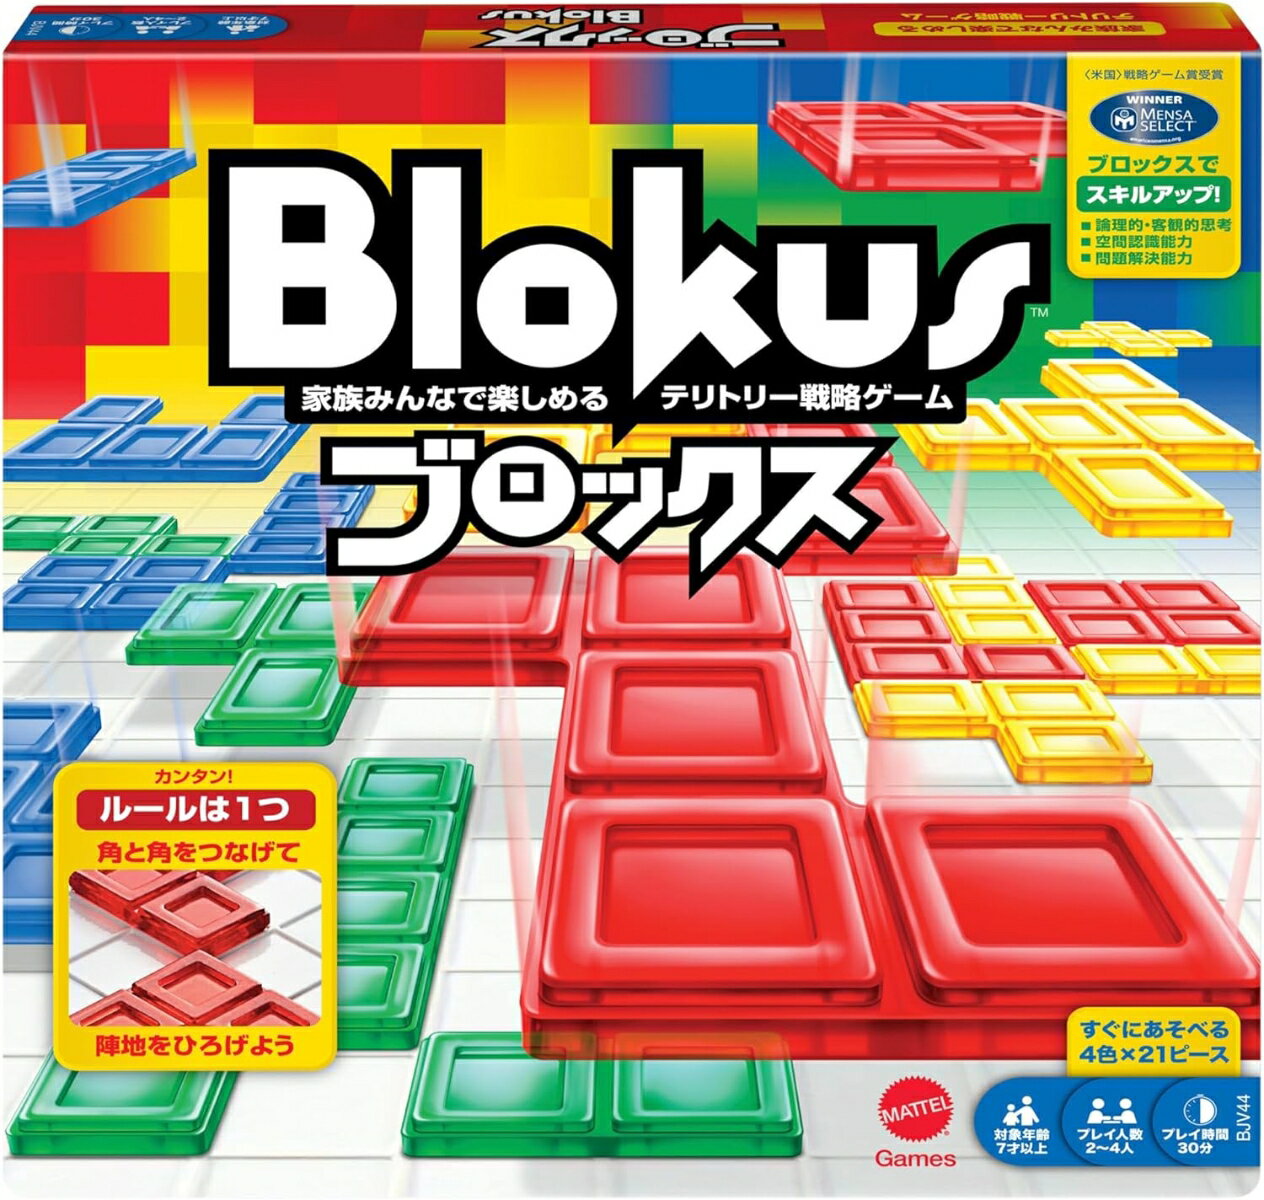 マテルゲーム(Mattel Game) ブロックス Blokus2～4人用BJV44